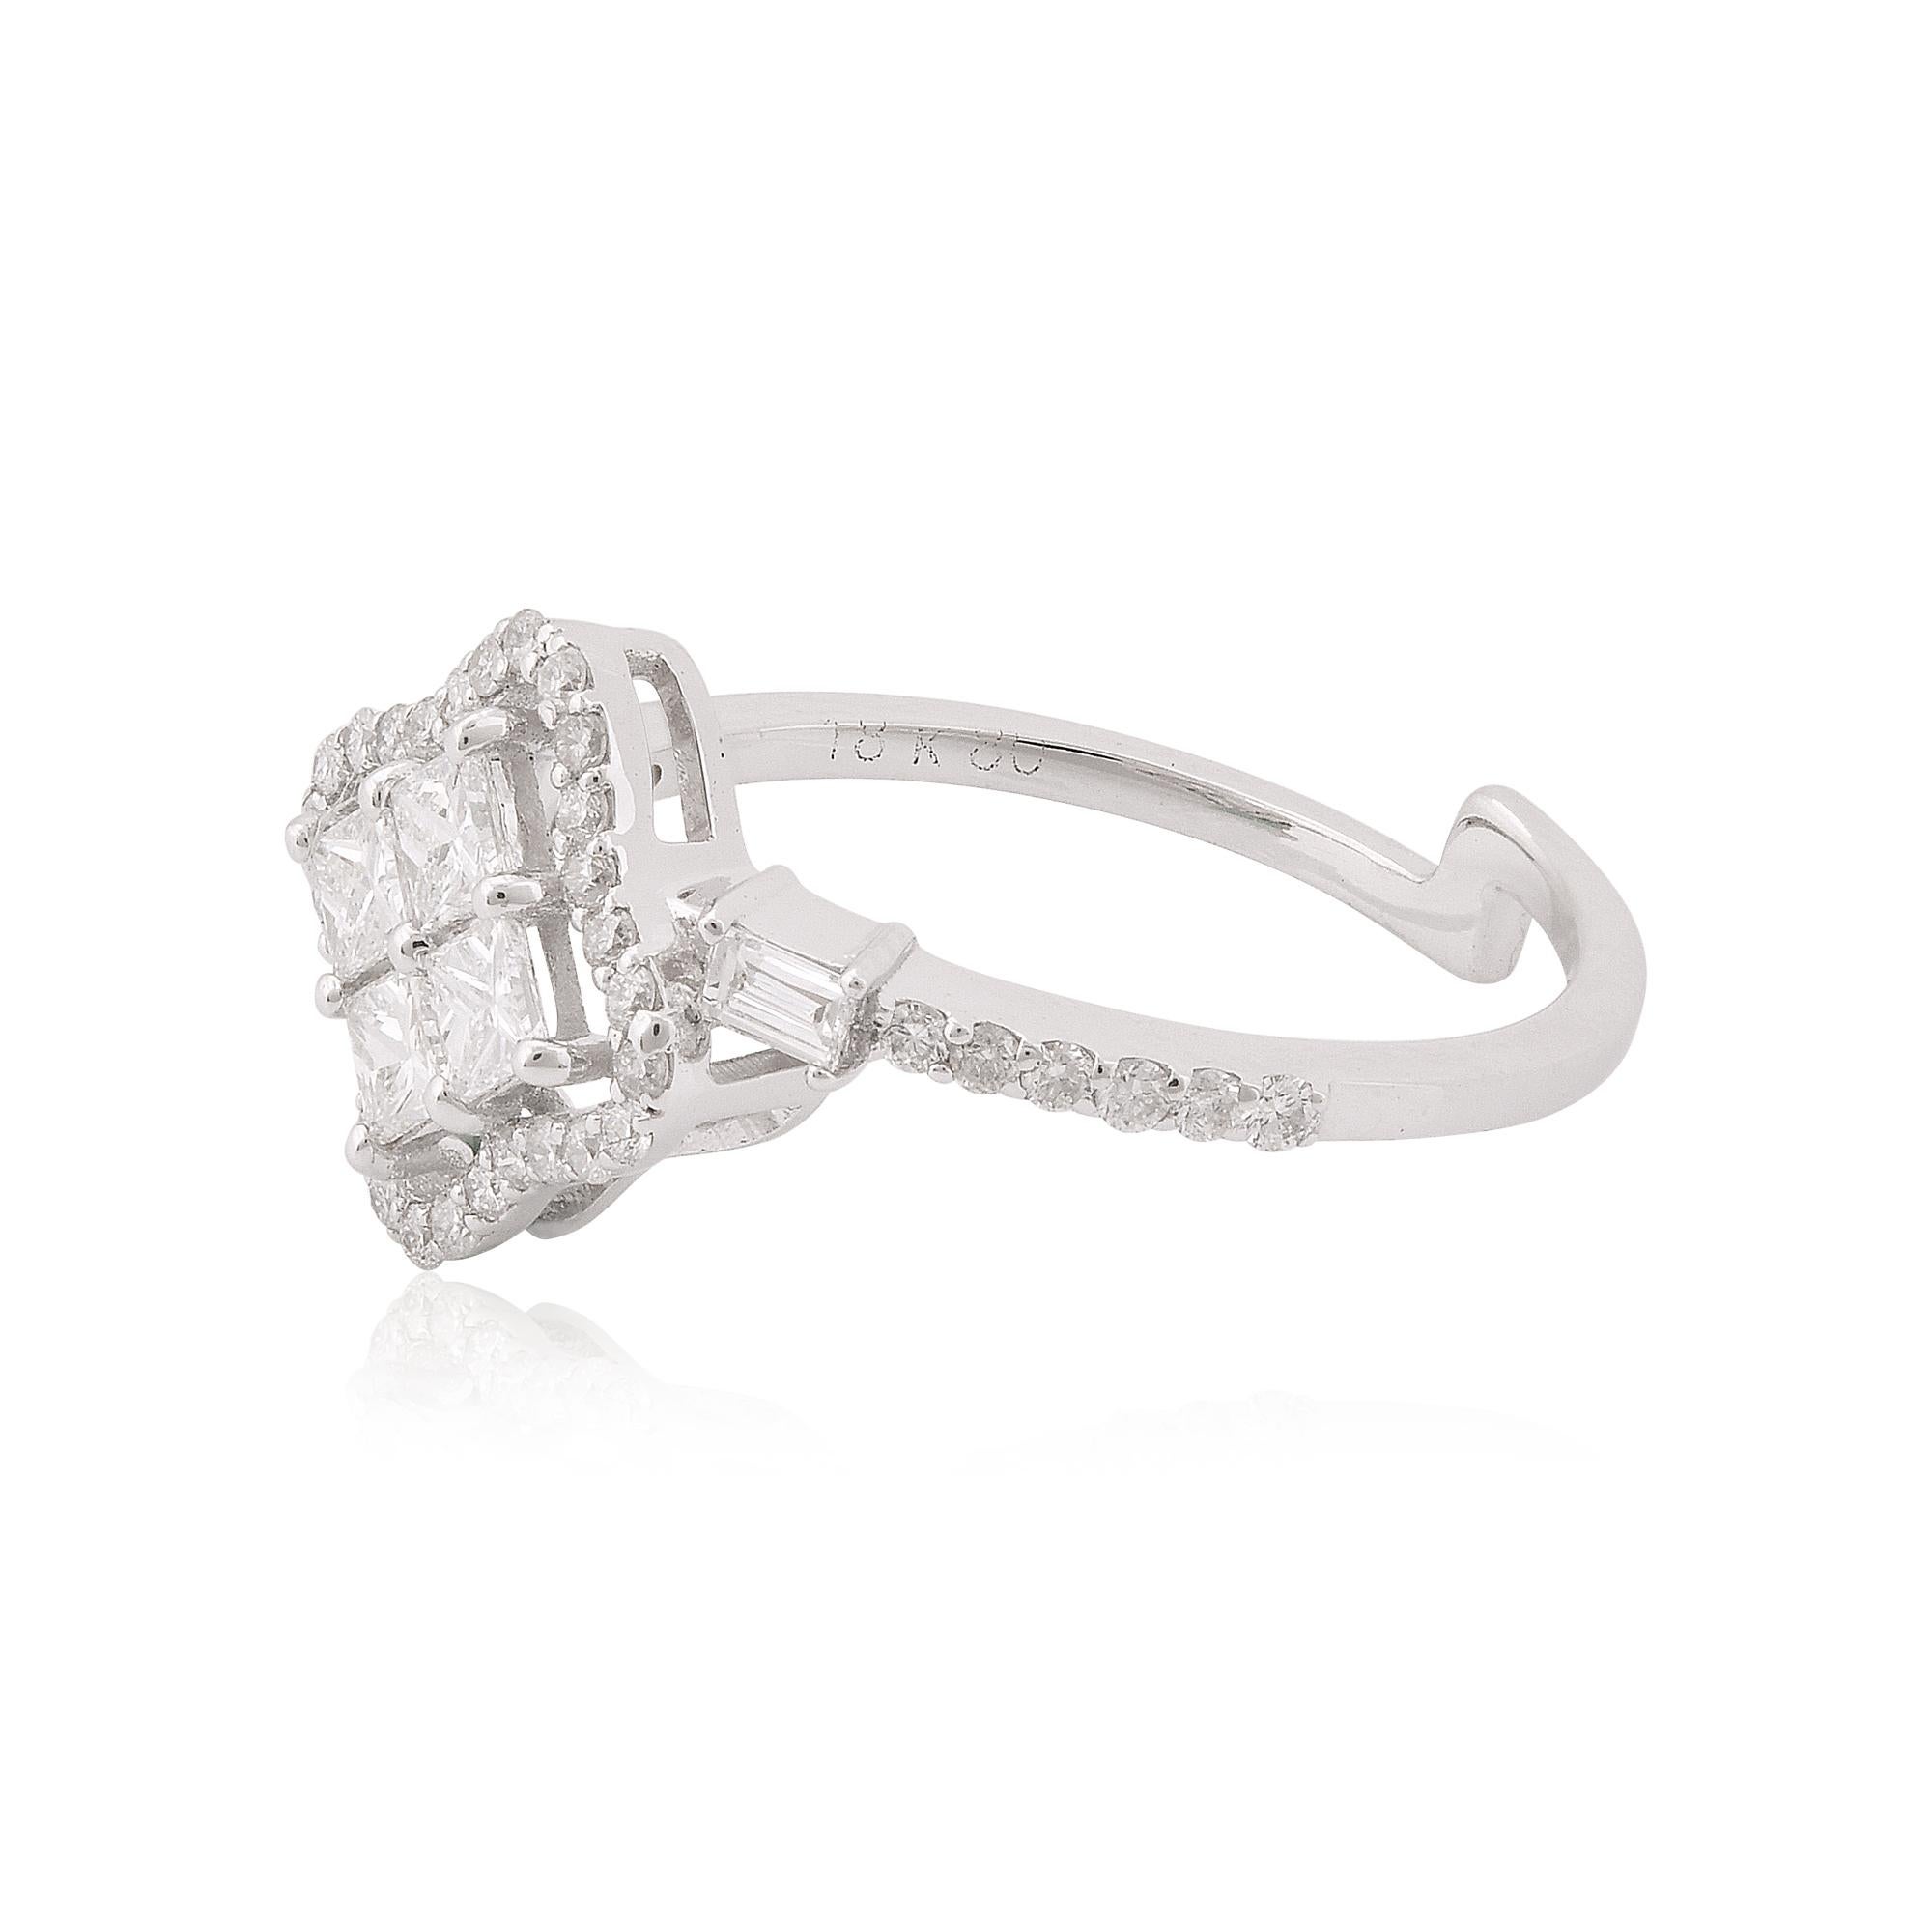 Lassen Sie sich von der luxuriösen Anziehungskraft dieses exquisiten Rings verführen und machen Sie ihn zum Symbol Ihres einzigartigen Stils und Ihrer Anmut. Mit seinen natürlichen Diamanten, der feinen Weißgoldverarbeitung und dem atemberaubenden